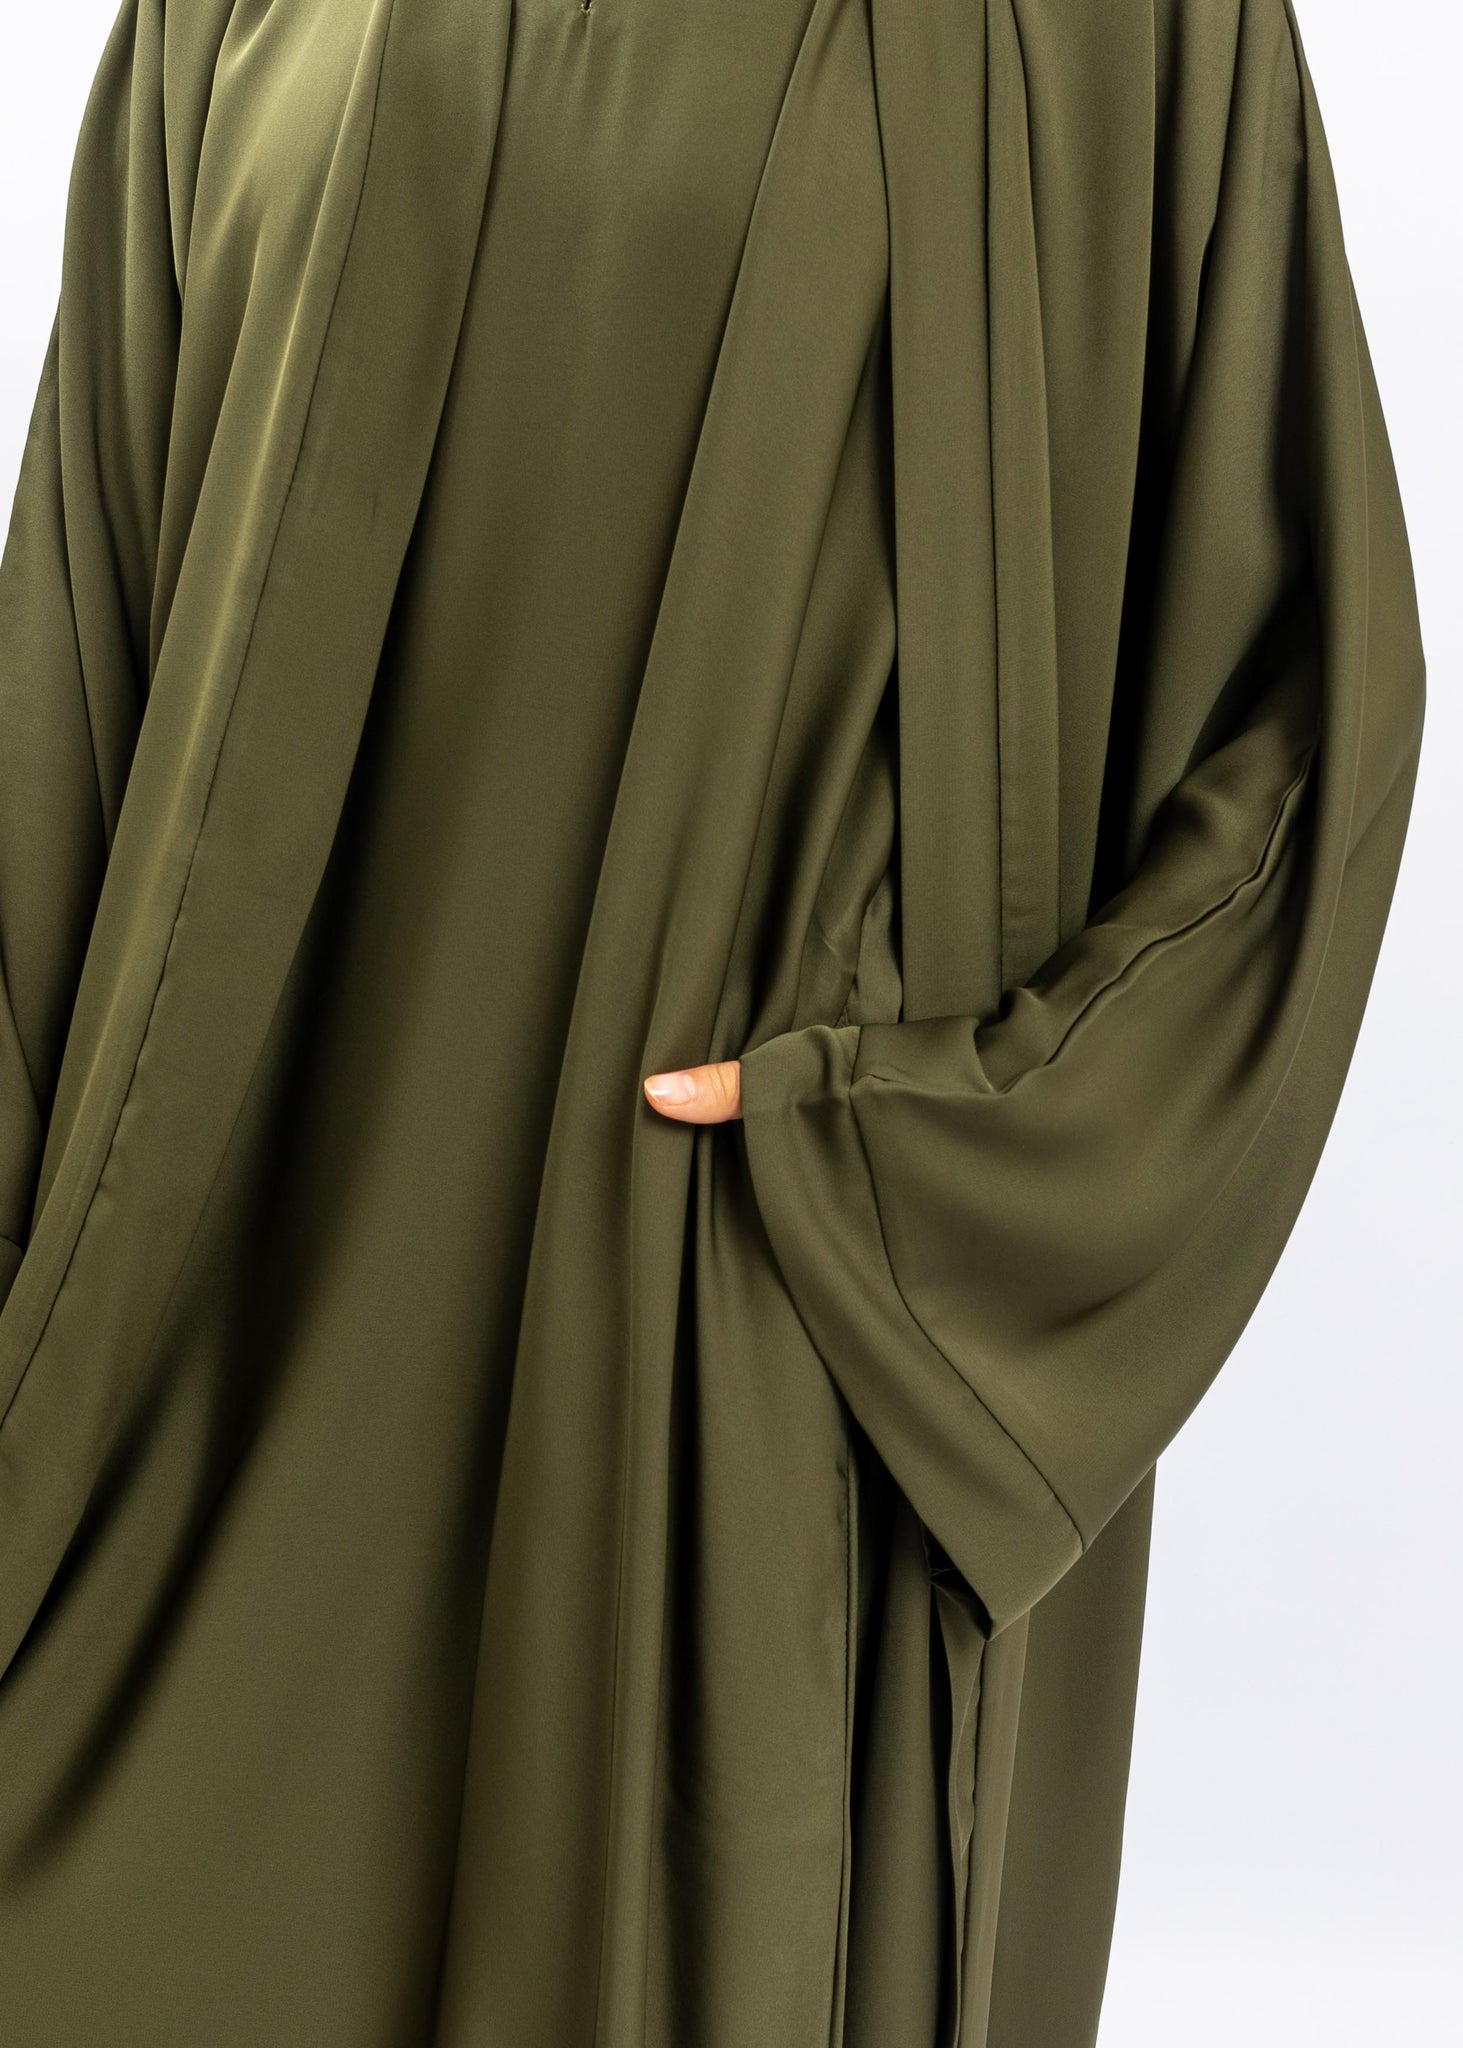 Olive green open abaya set